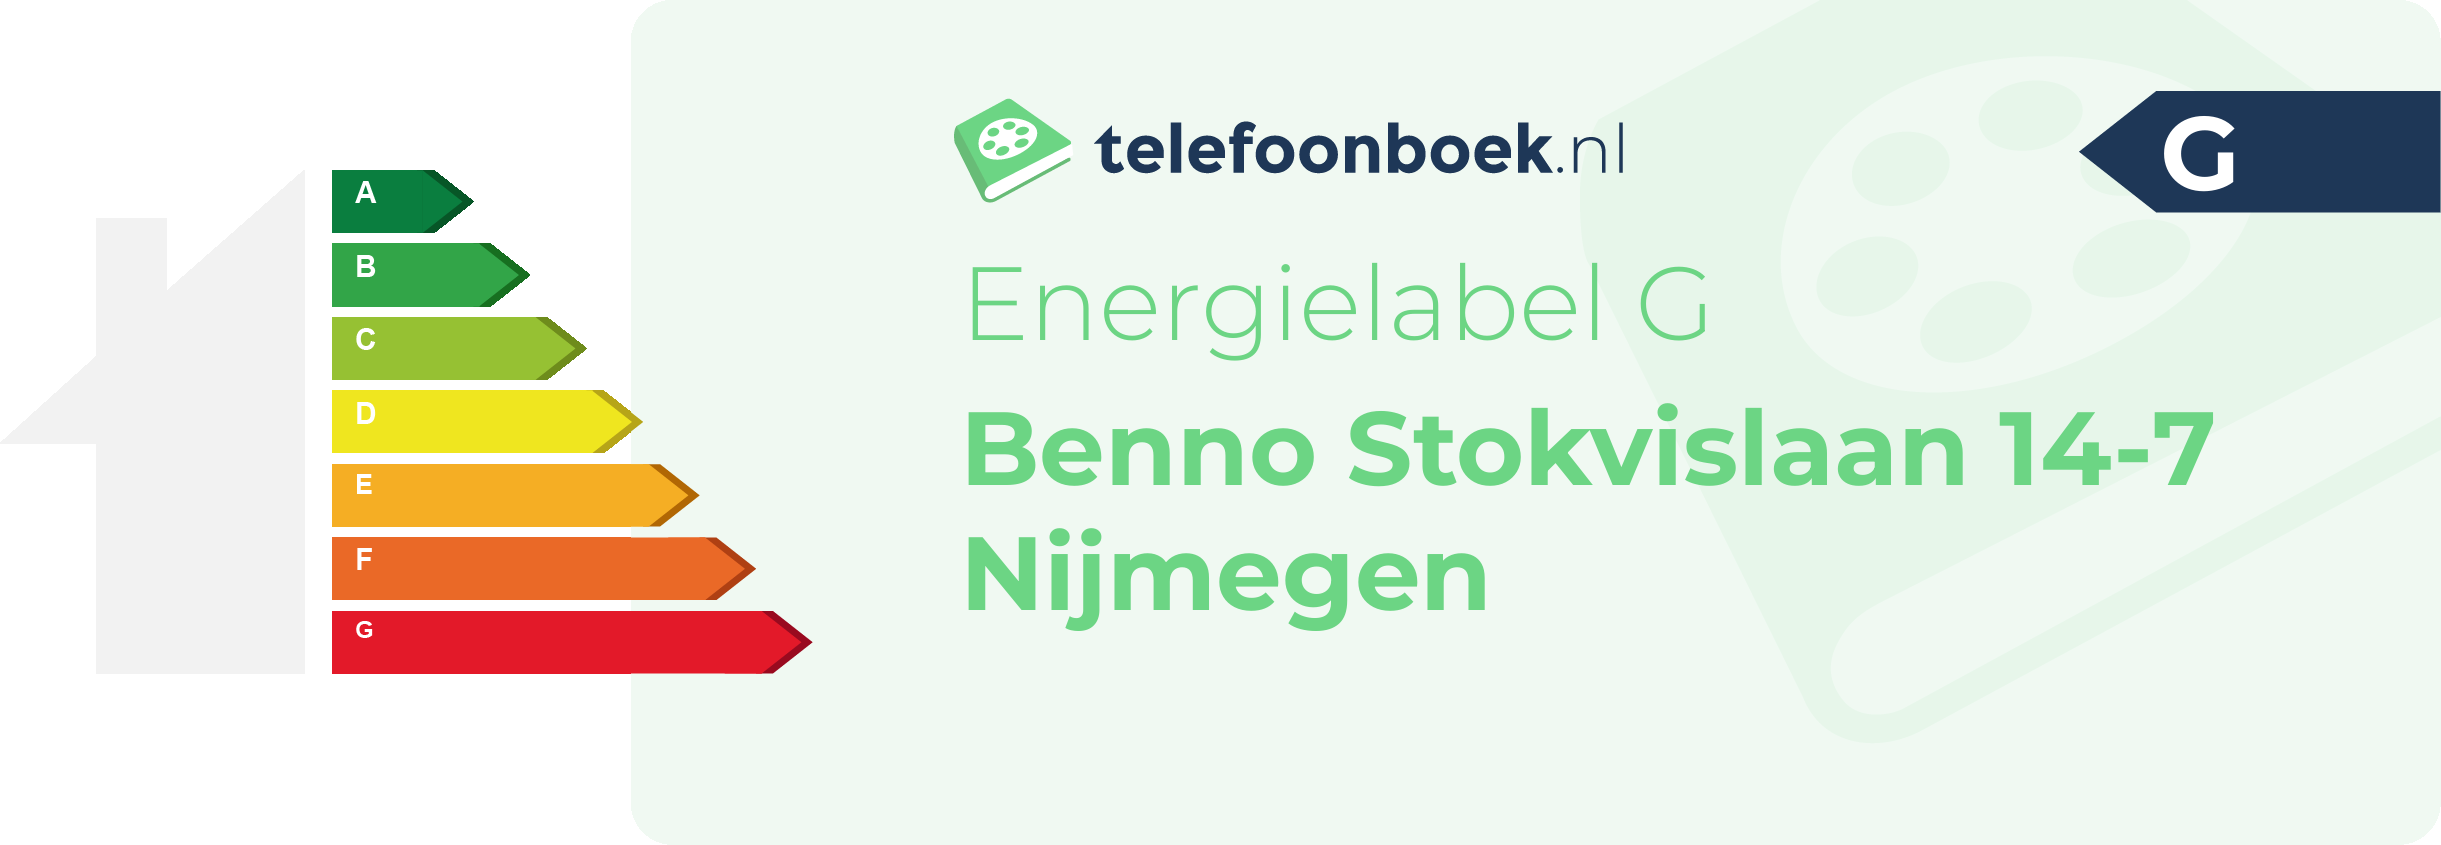 Energielabel Benno Stokvislaan 14-7 Nijmegen